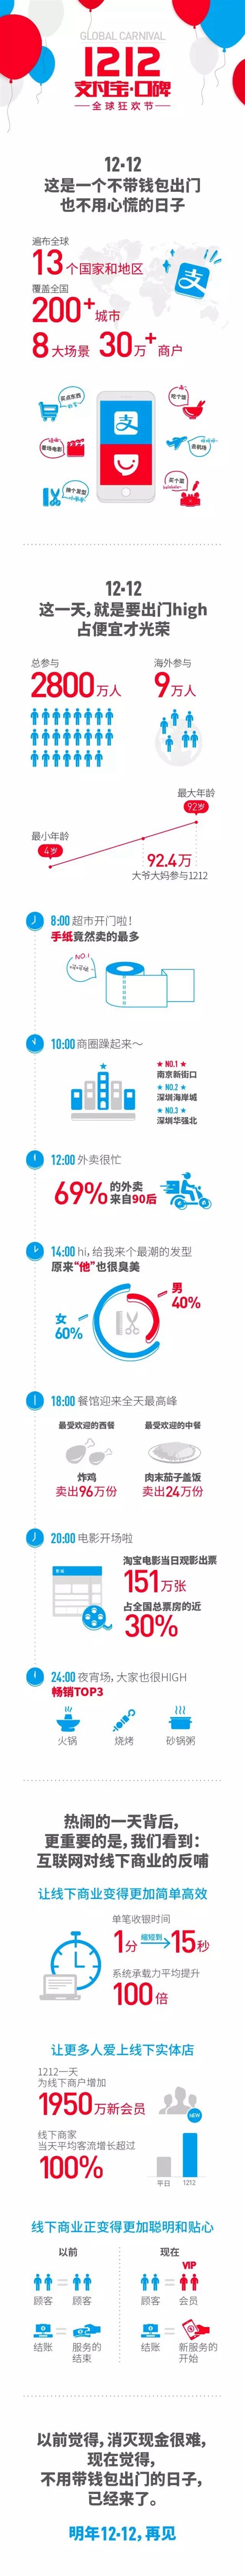 一张图看懂双12 上海市民热情最高